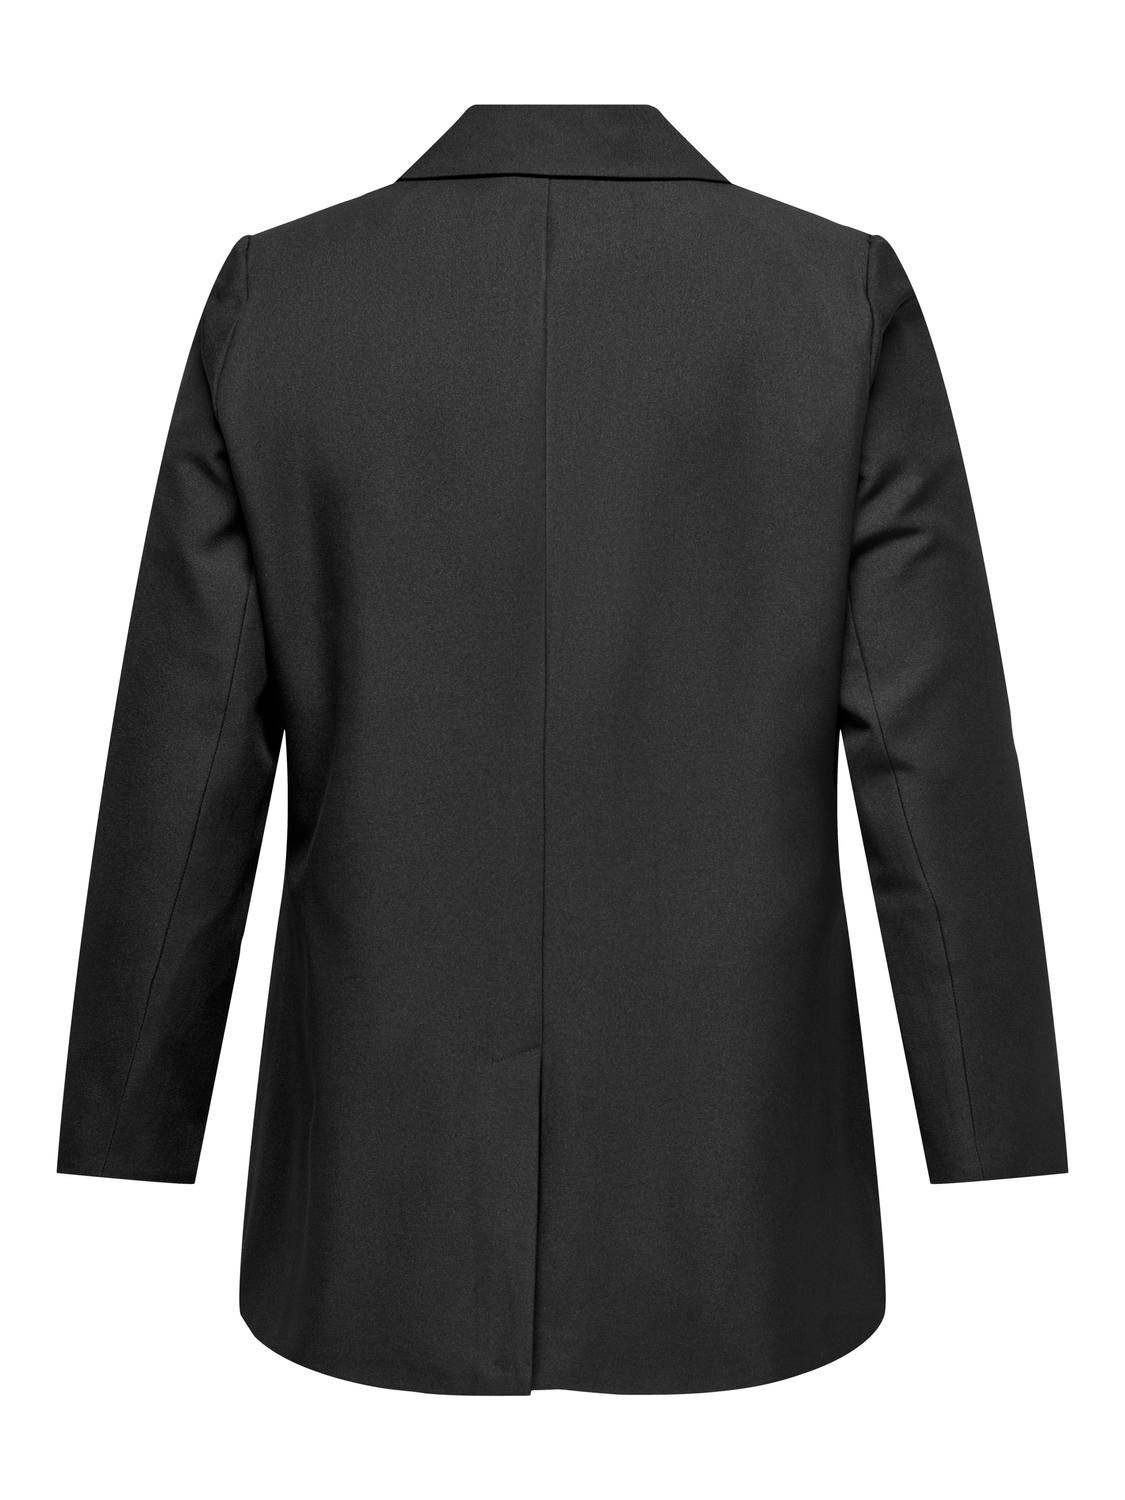 ONLY Blazers Corte comfort Cuello invertido -Black - 15325162